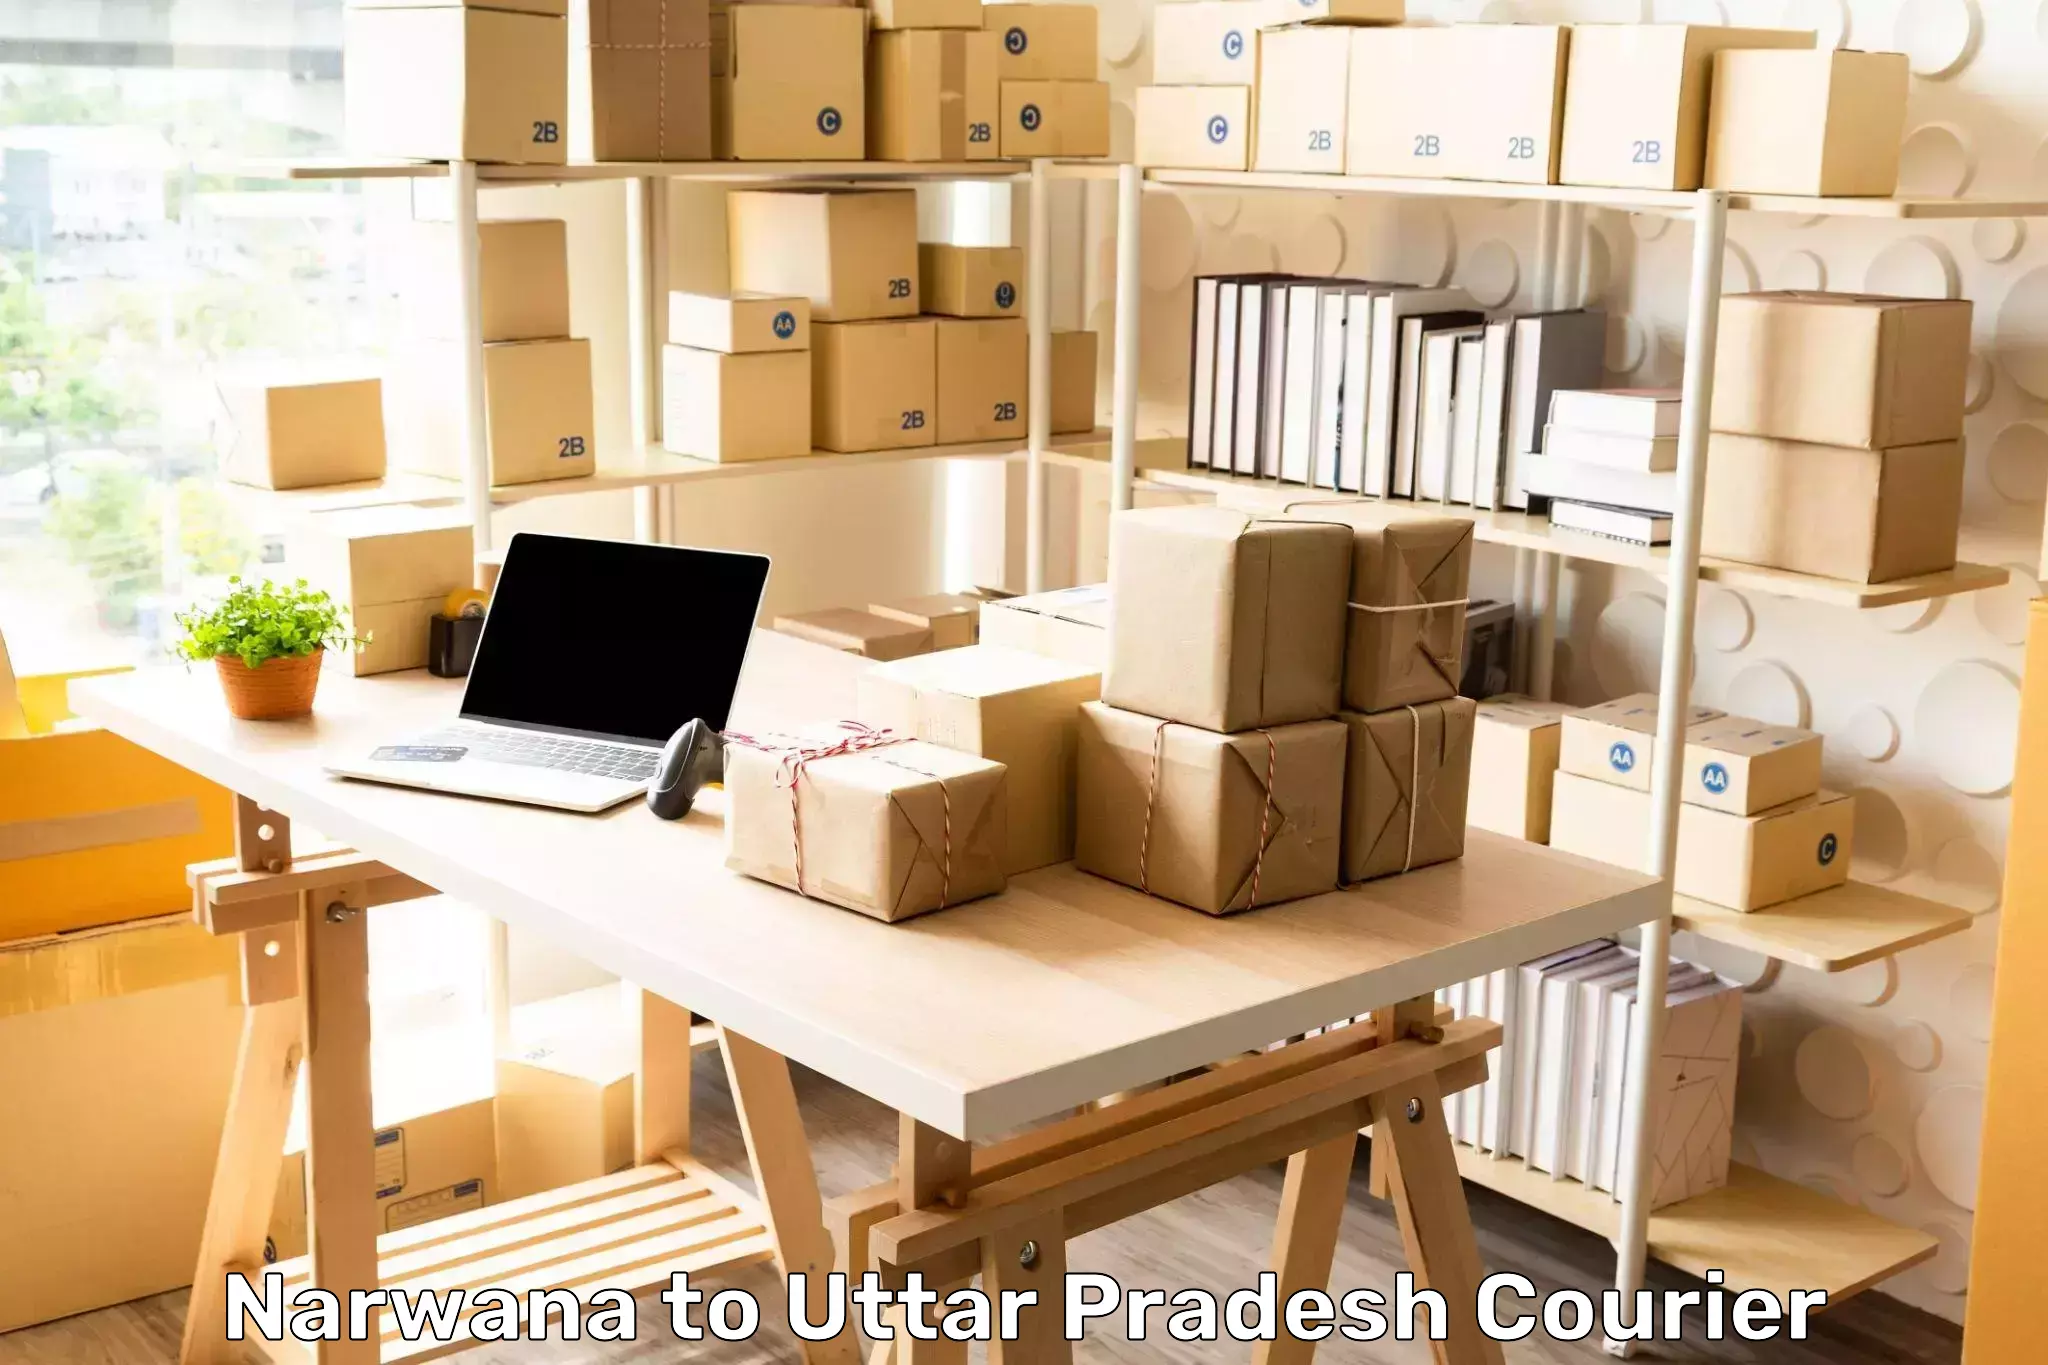 Package consolidation in Narwana to Uttar Pradesh